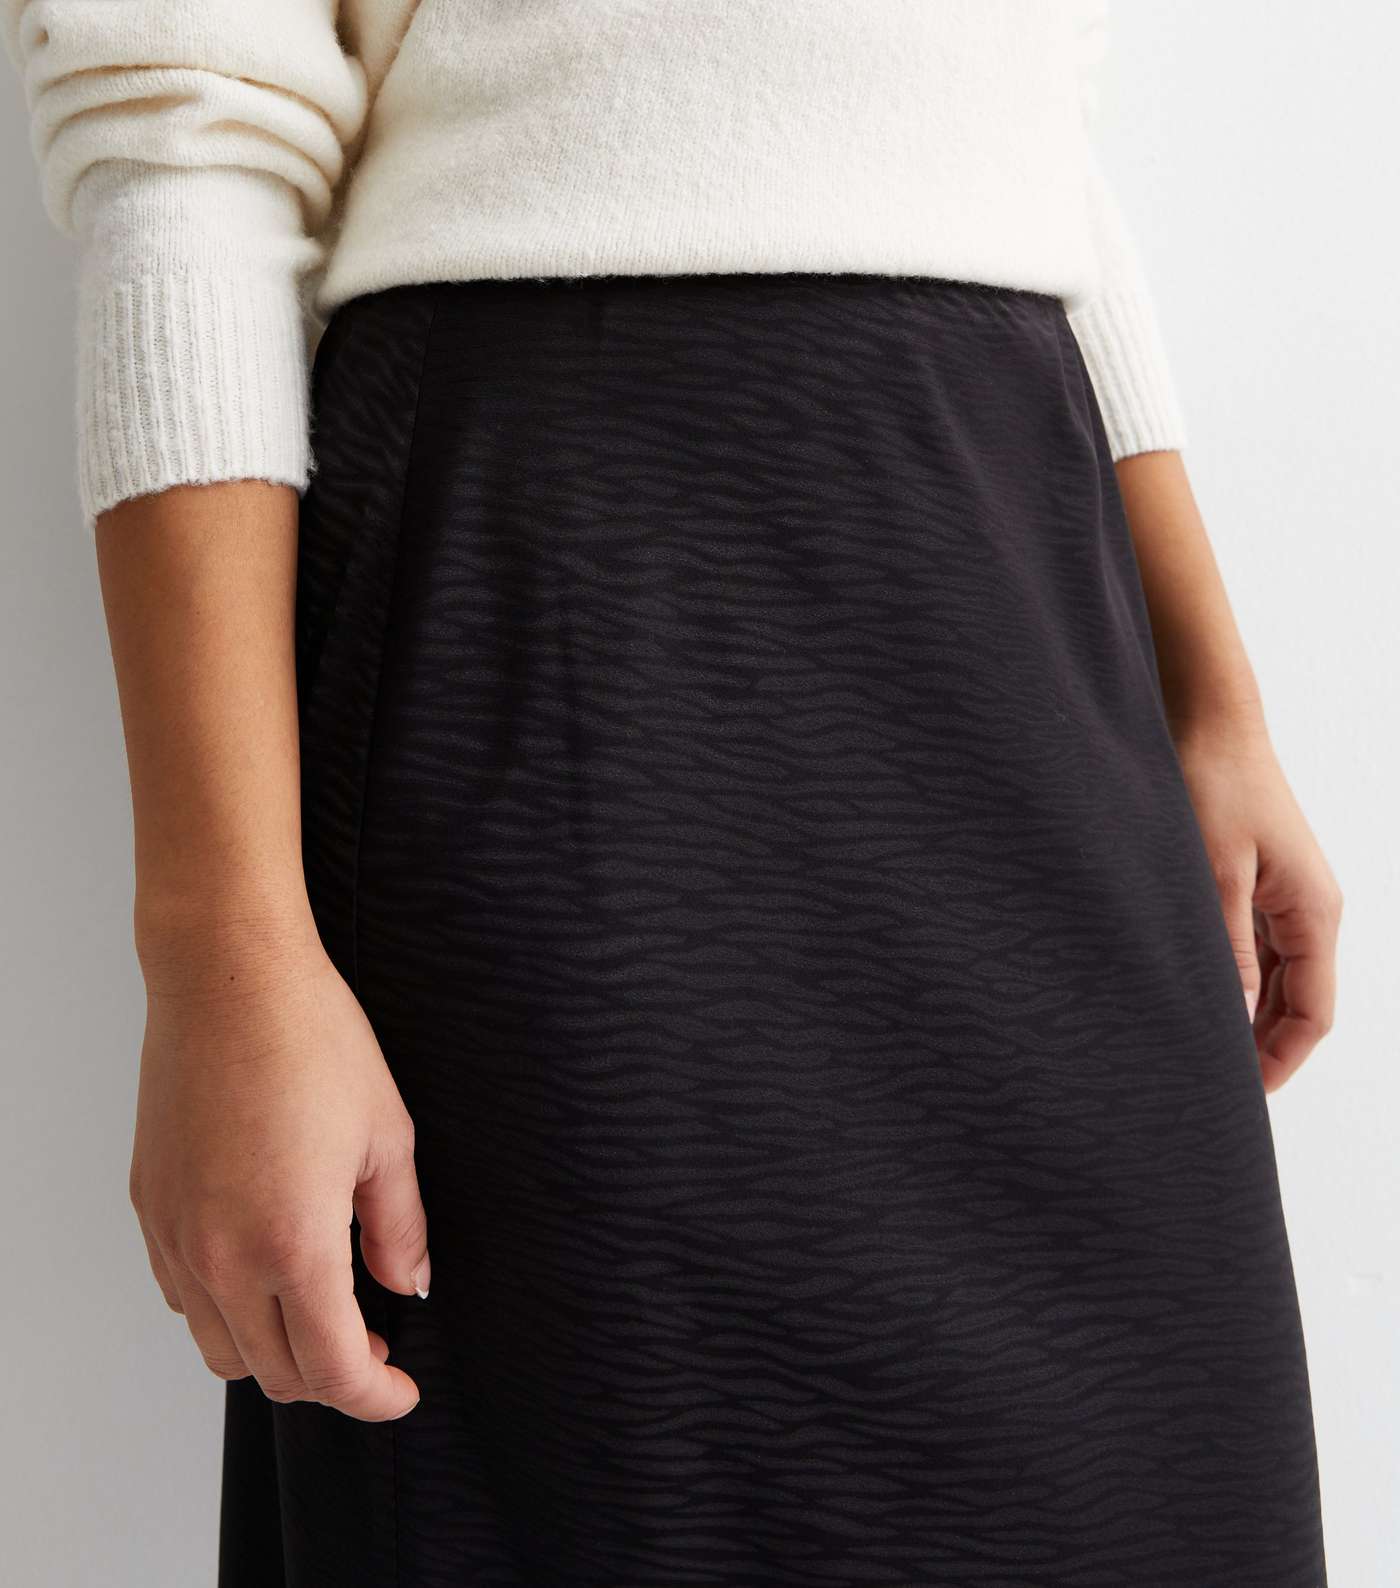 Petite Black Jacquard Satin Bias Cut Maxi Skirt Image 2